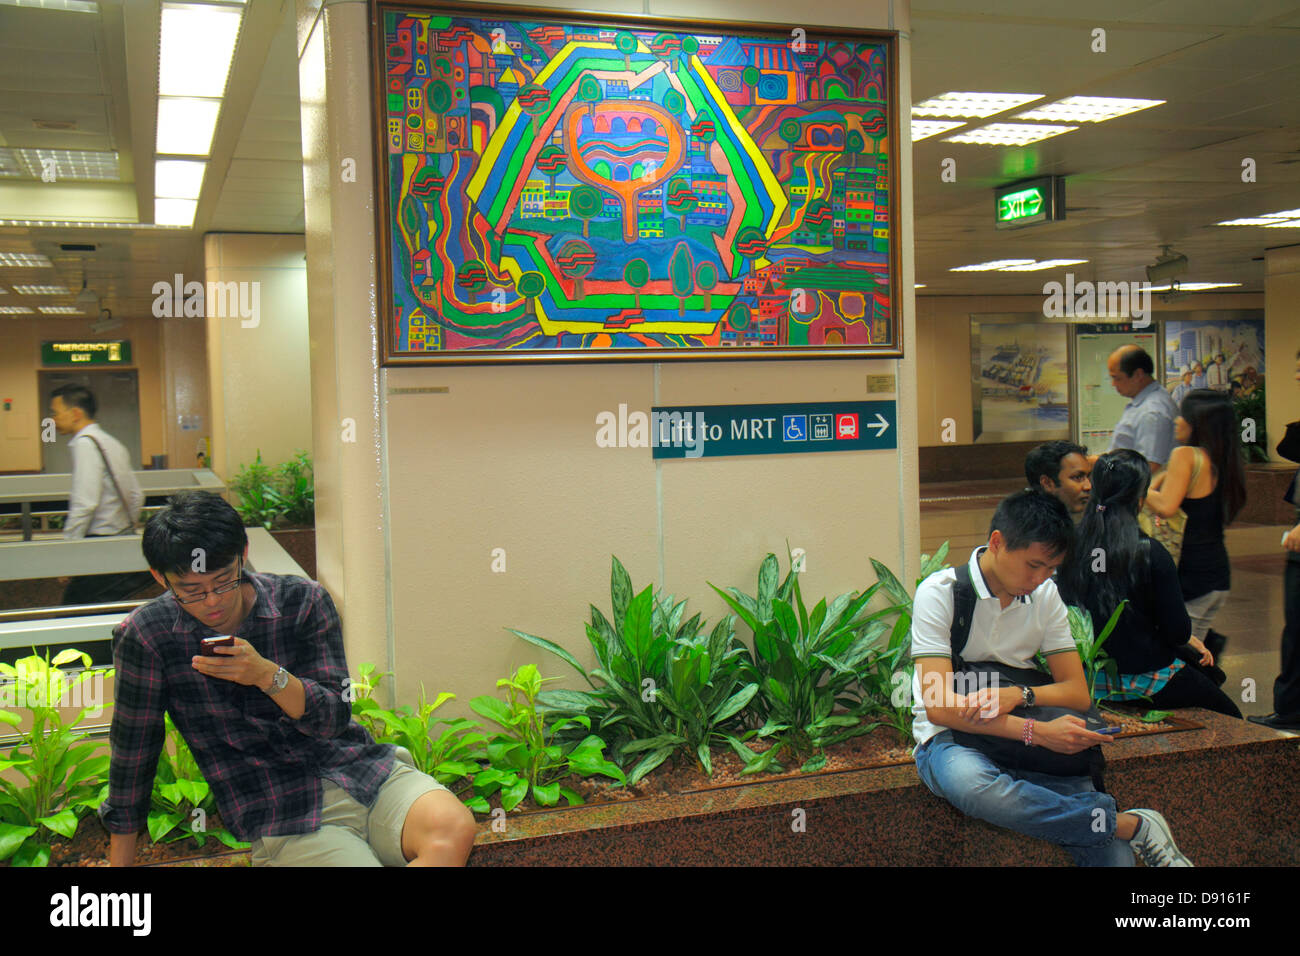 Singapur, Raffles Place MRT-Station, U-Bahn, öffentliche Verkehrsmittel, Kunstwerke, Malerei, Asiaten, ethnische Einwanderer Minderheit, Anzeige für Erwachsene Stockfoto